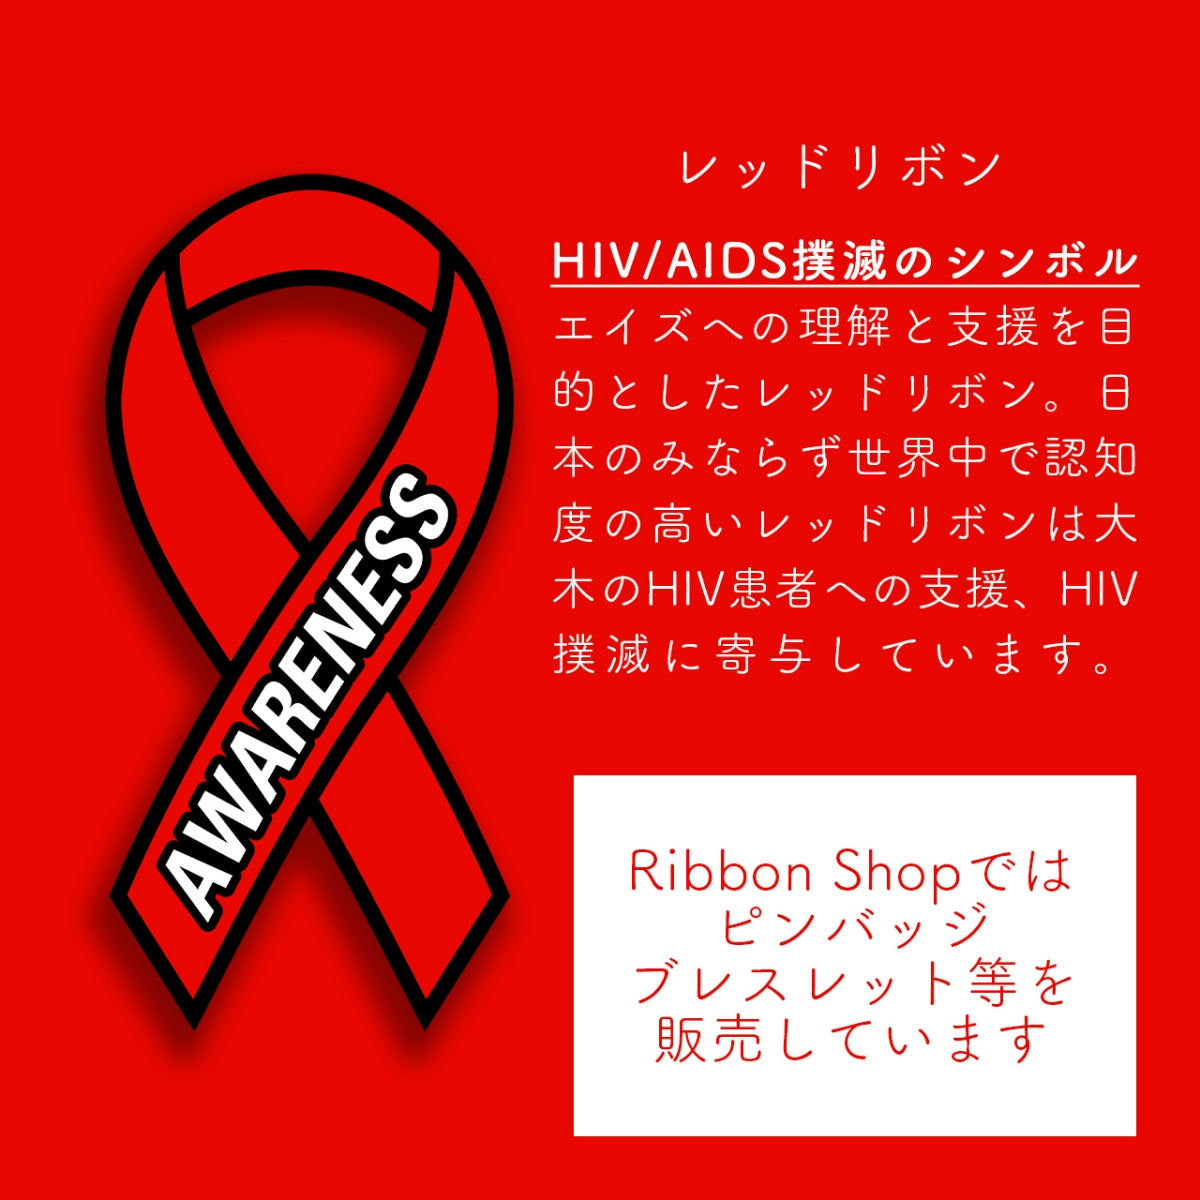 レッドリボン ピンバッジ 小 ピンズ ピンバッチ バッチ エイズ AIDS エイズデー アウェアネス バッチ バッヂ LGBTQ